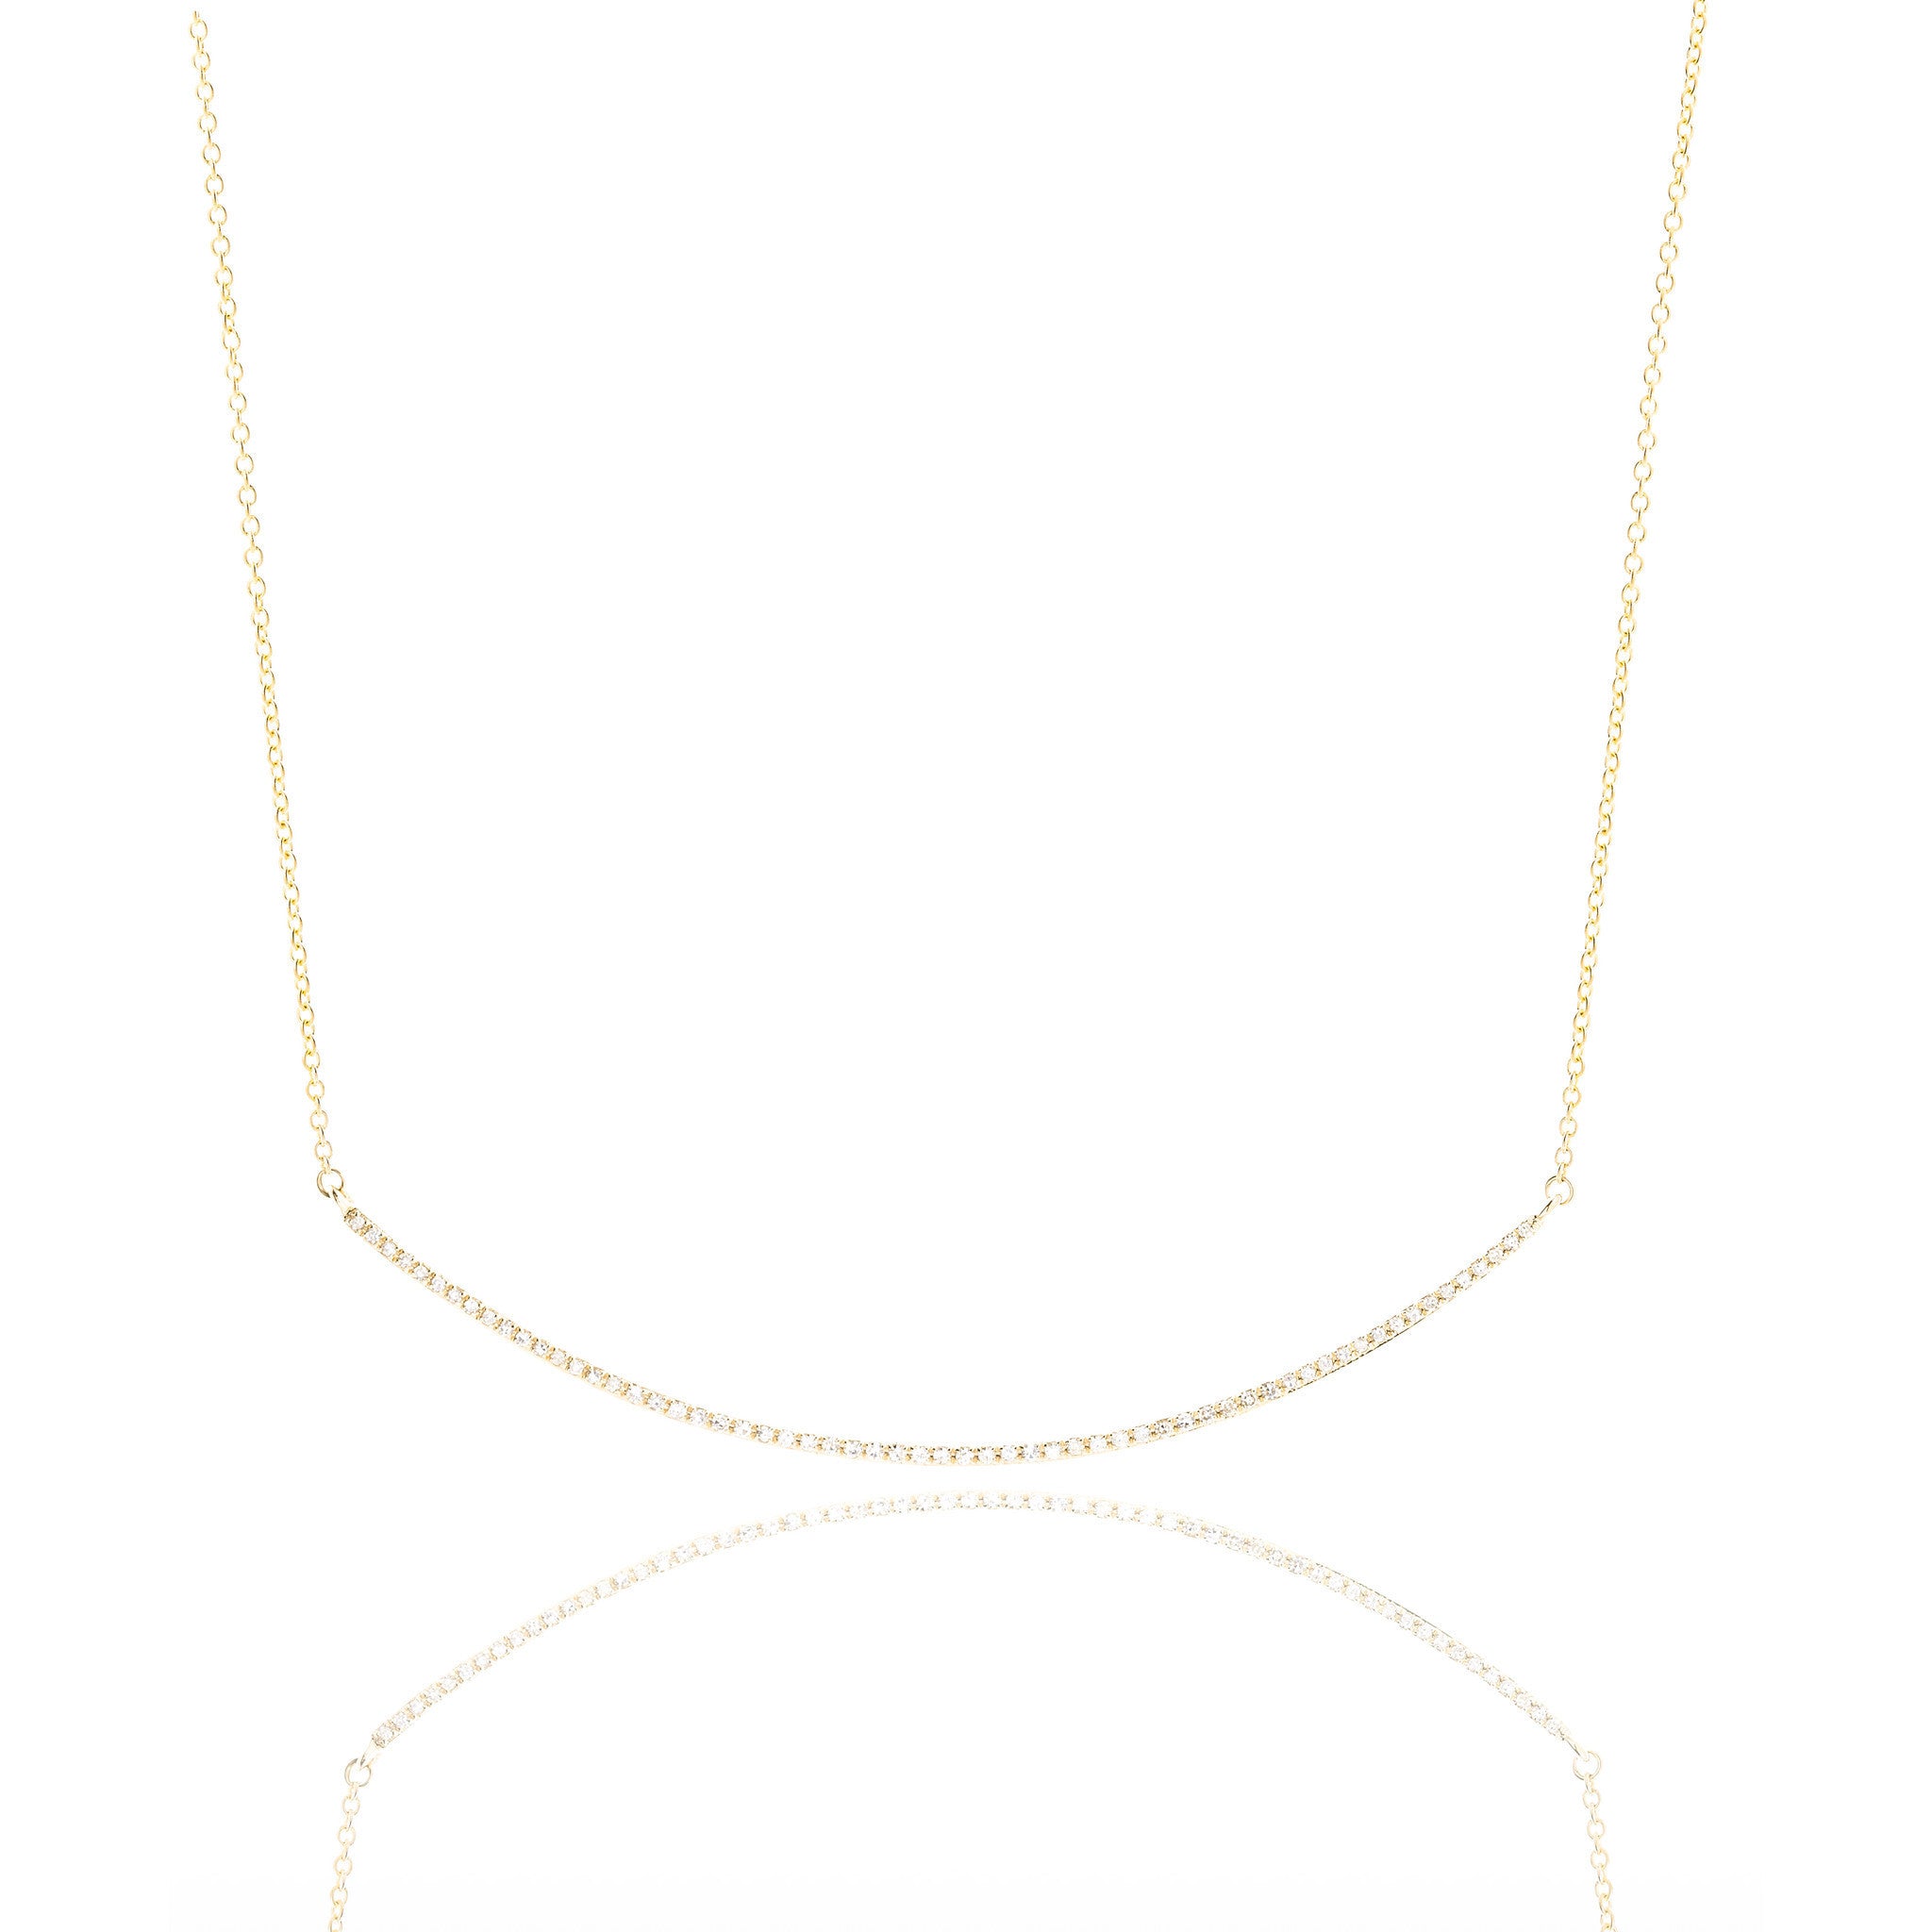 Diamond Arc Necklace by Atheria Jewelry